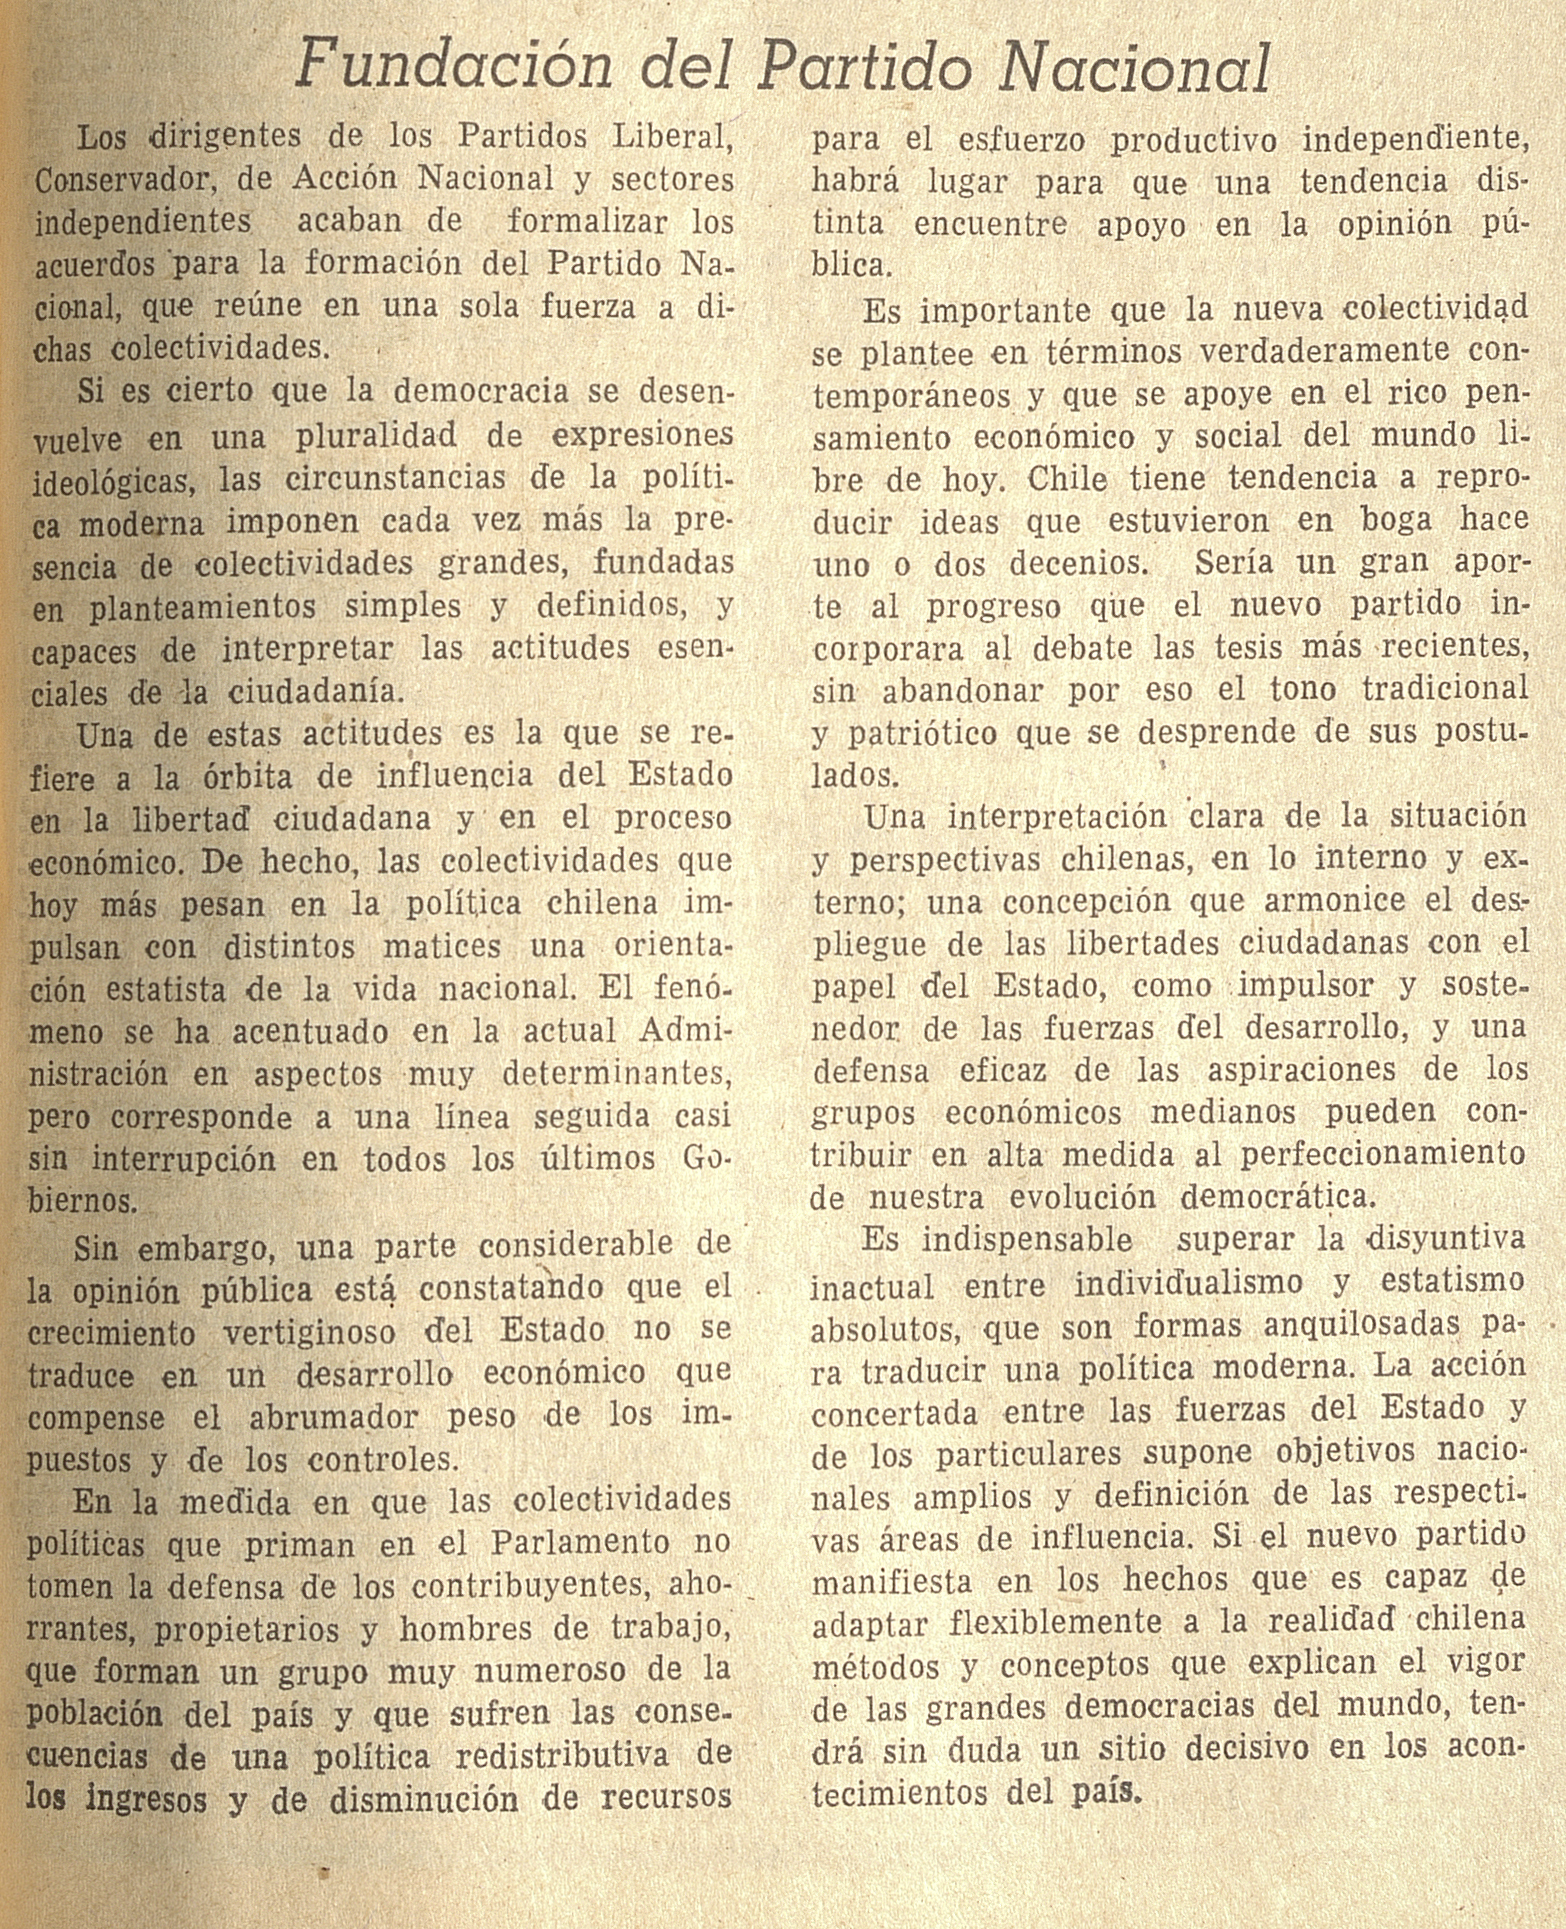 Fundación del Partido Nacional, Diario El Mercurio, Santiago, jueves 12 de mayo de 1966.